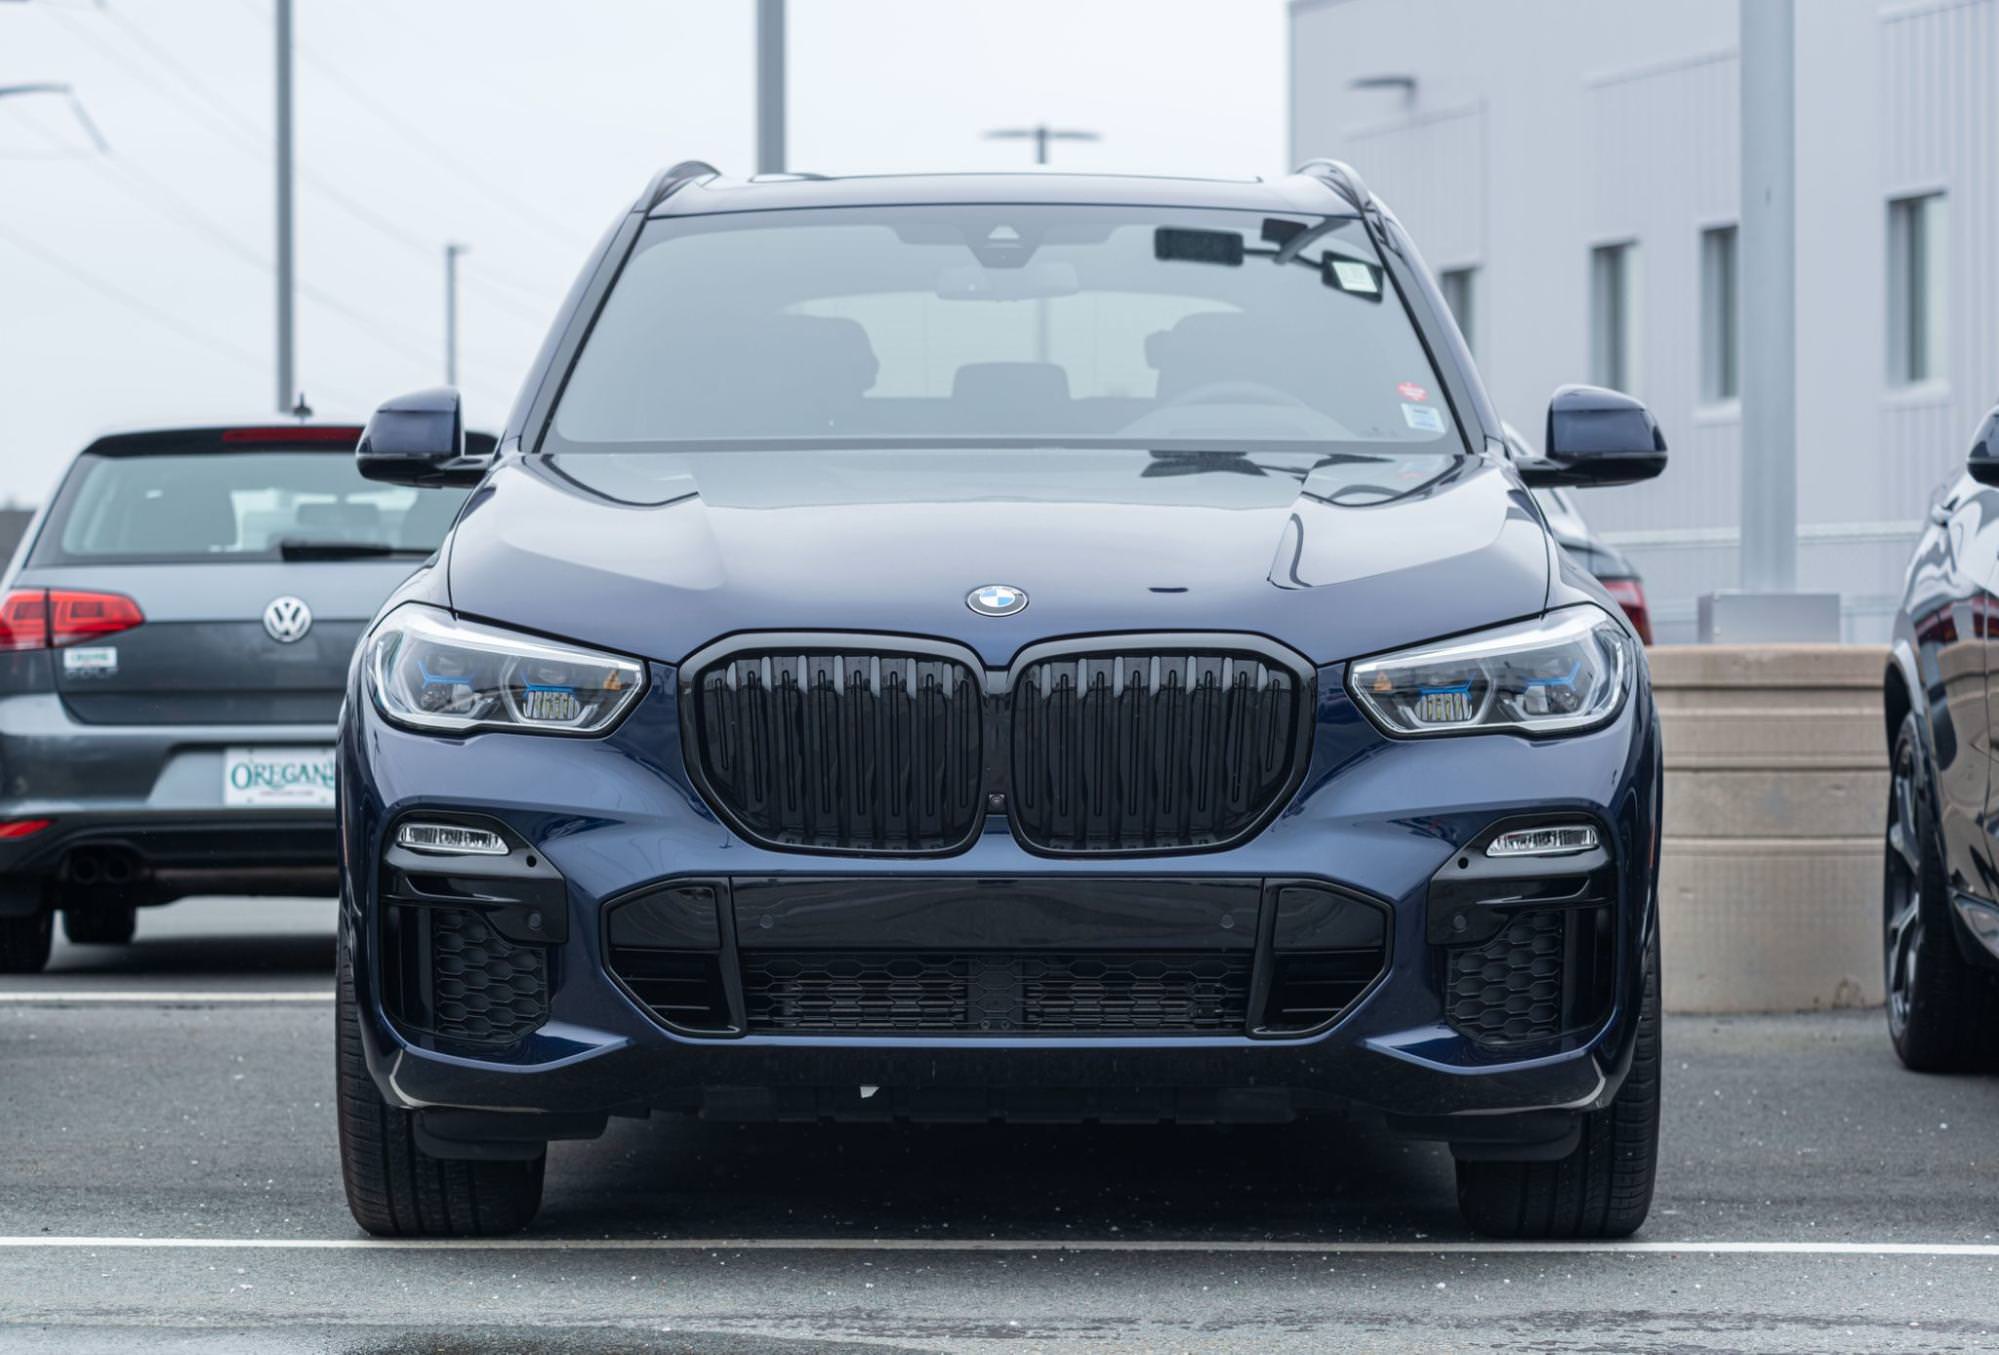 blauwe BMW x5 op een parkeerplaats